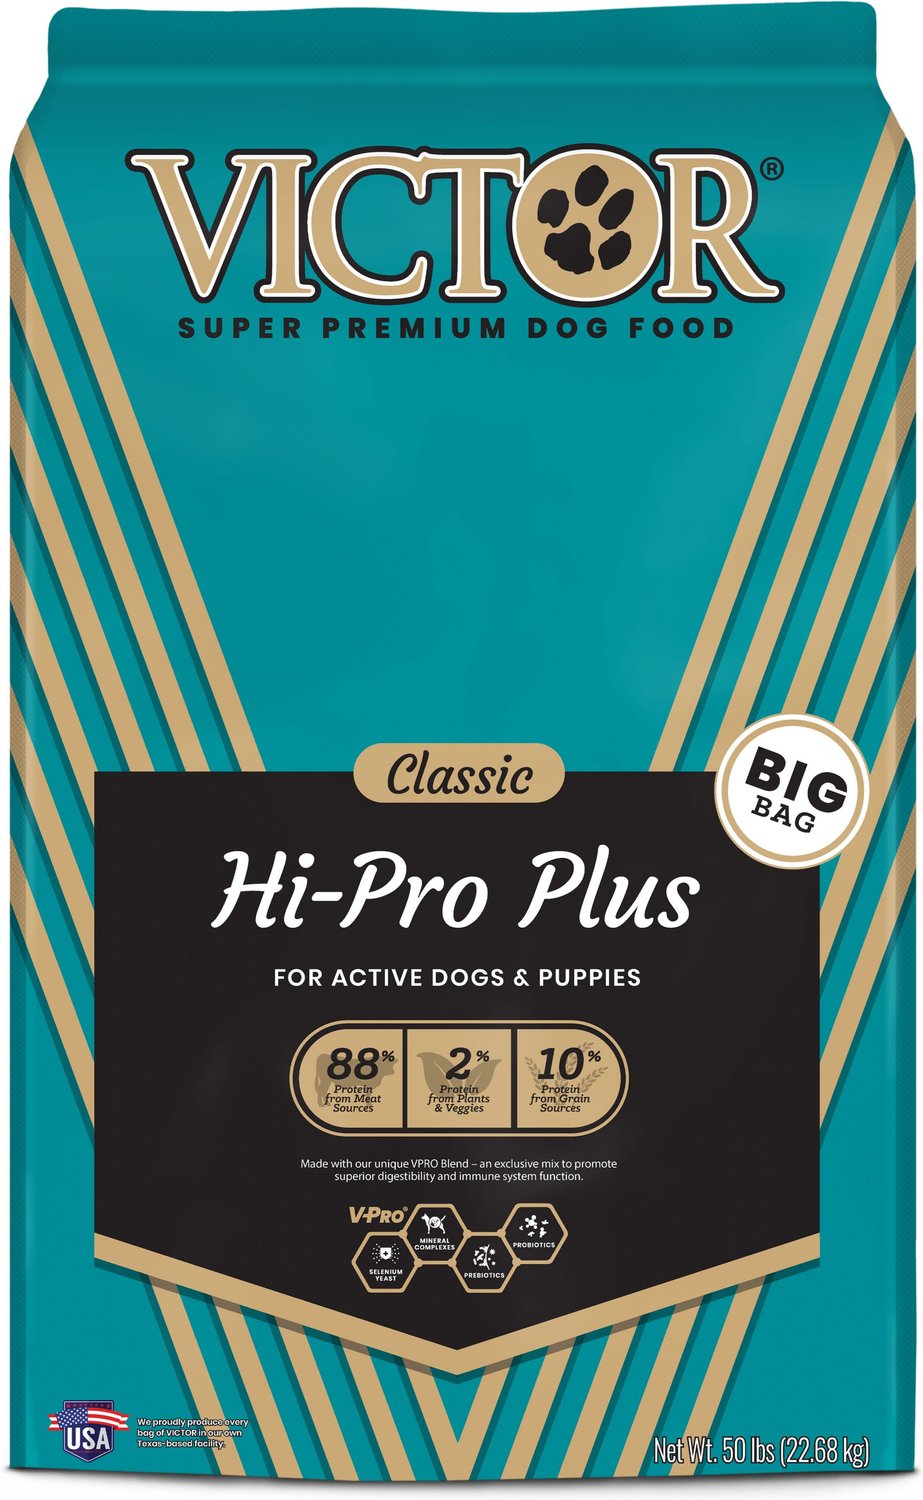 VICTOR Classic Hi-Pro Plus Formula Dry Dog Food